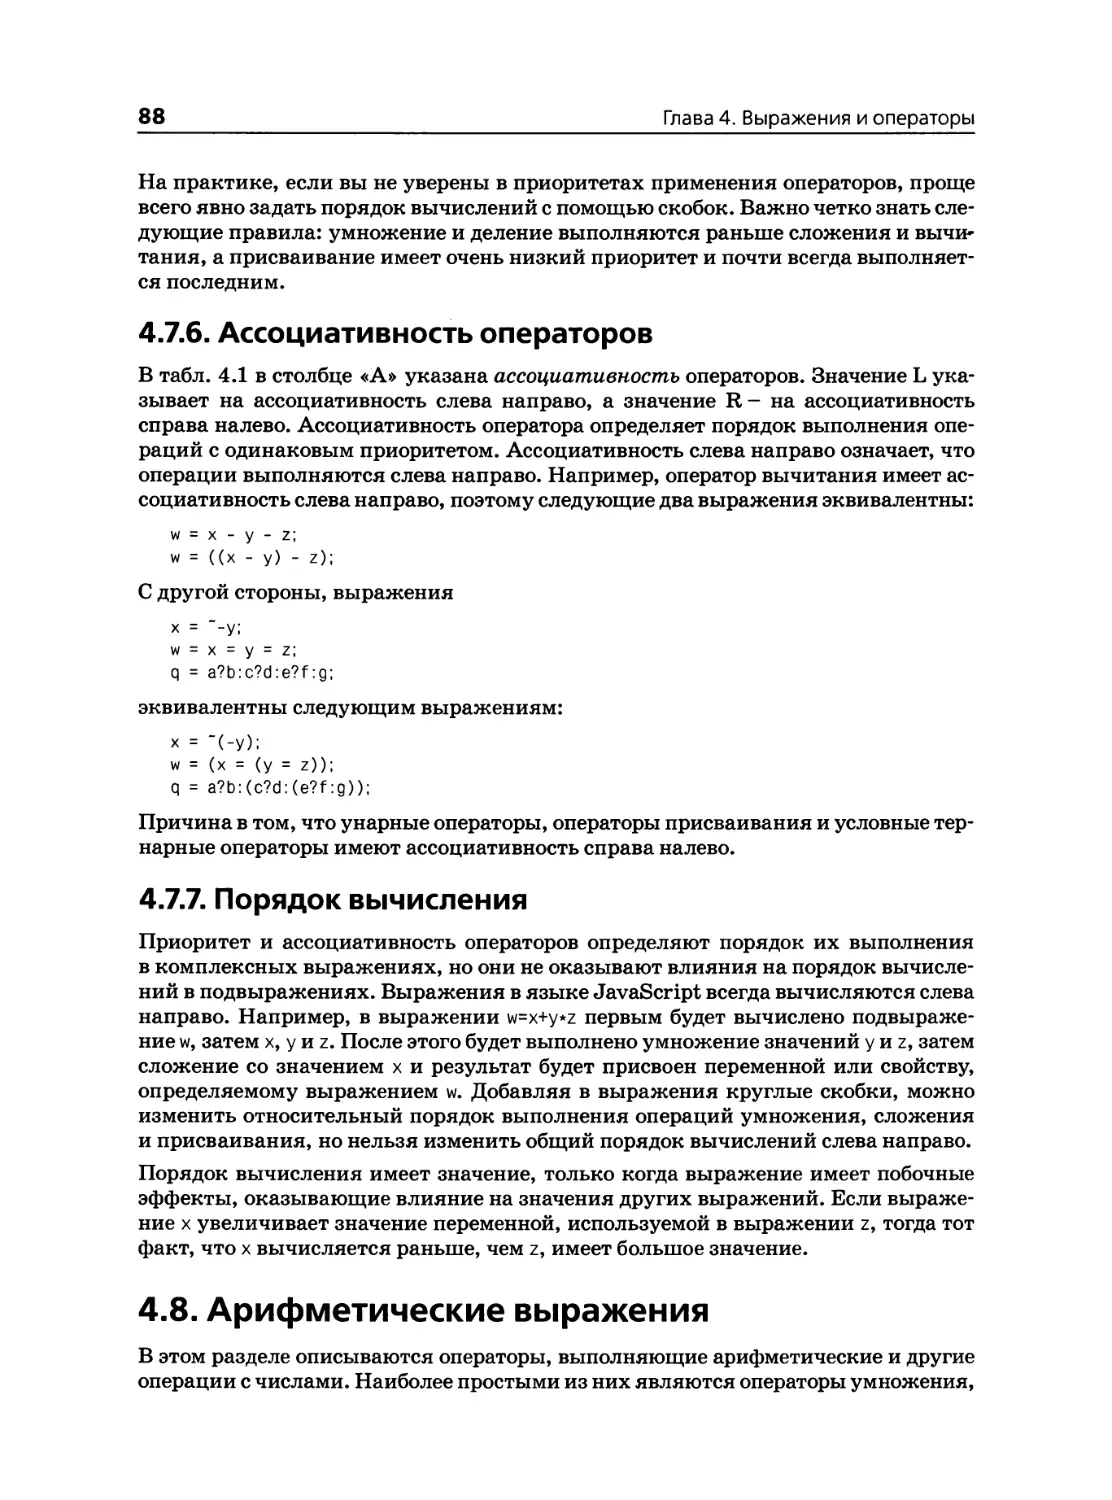 4.7.6. Ассоциативность операторов
4.7.7. Порядок вычисления
4.8. Арифметические выражения